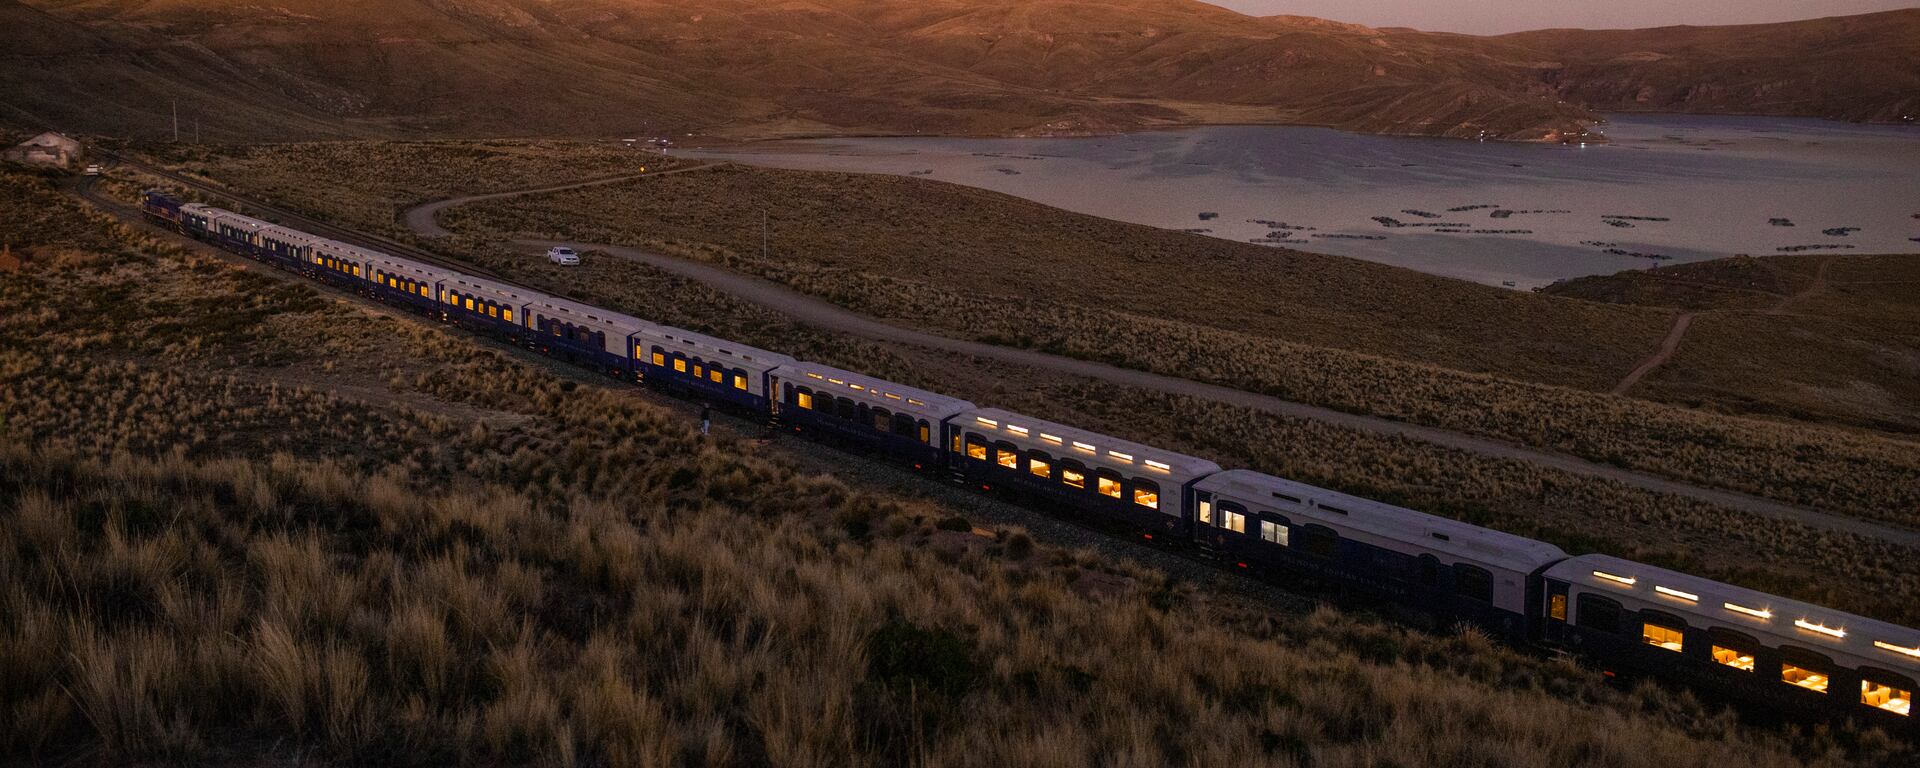 Travesía en los Andes peruanos: así es viajar en el tren más lujoso de Latinoamérica